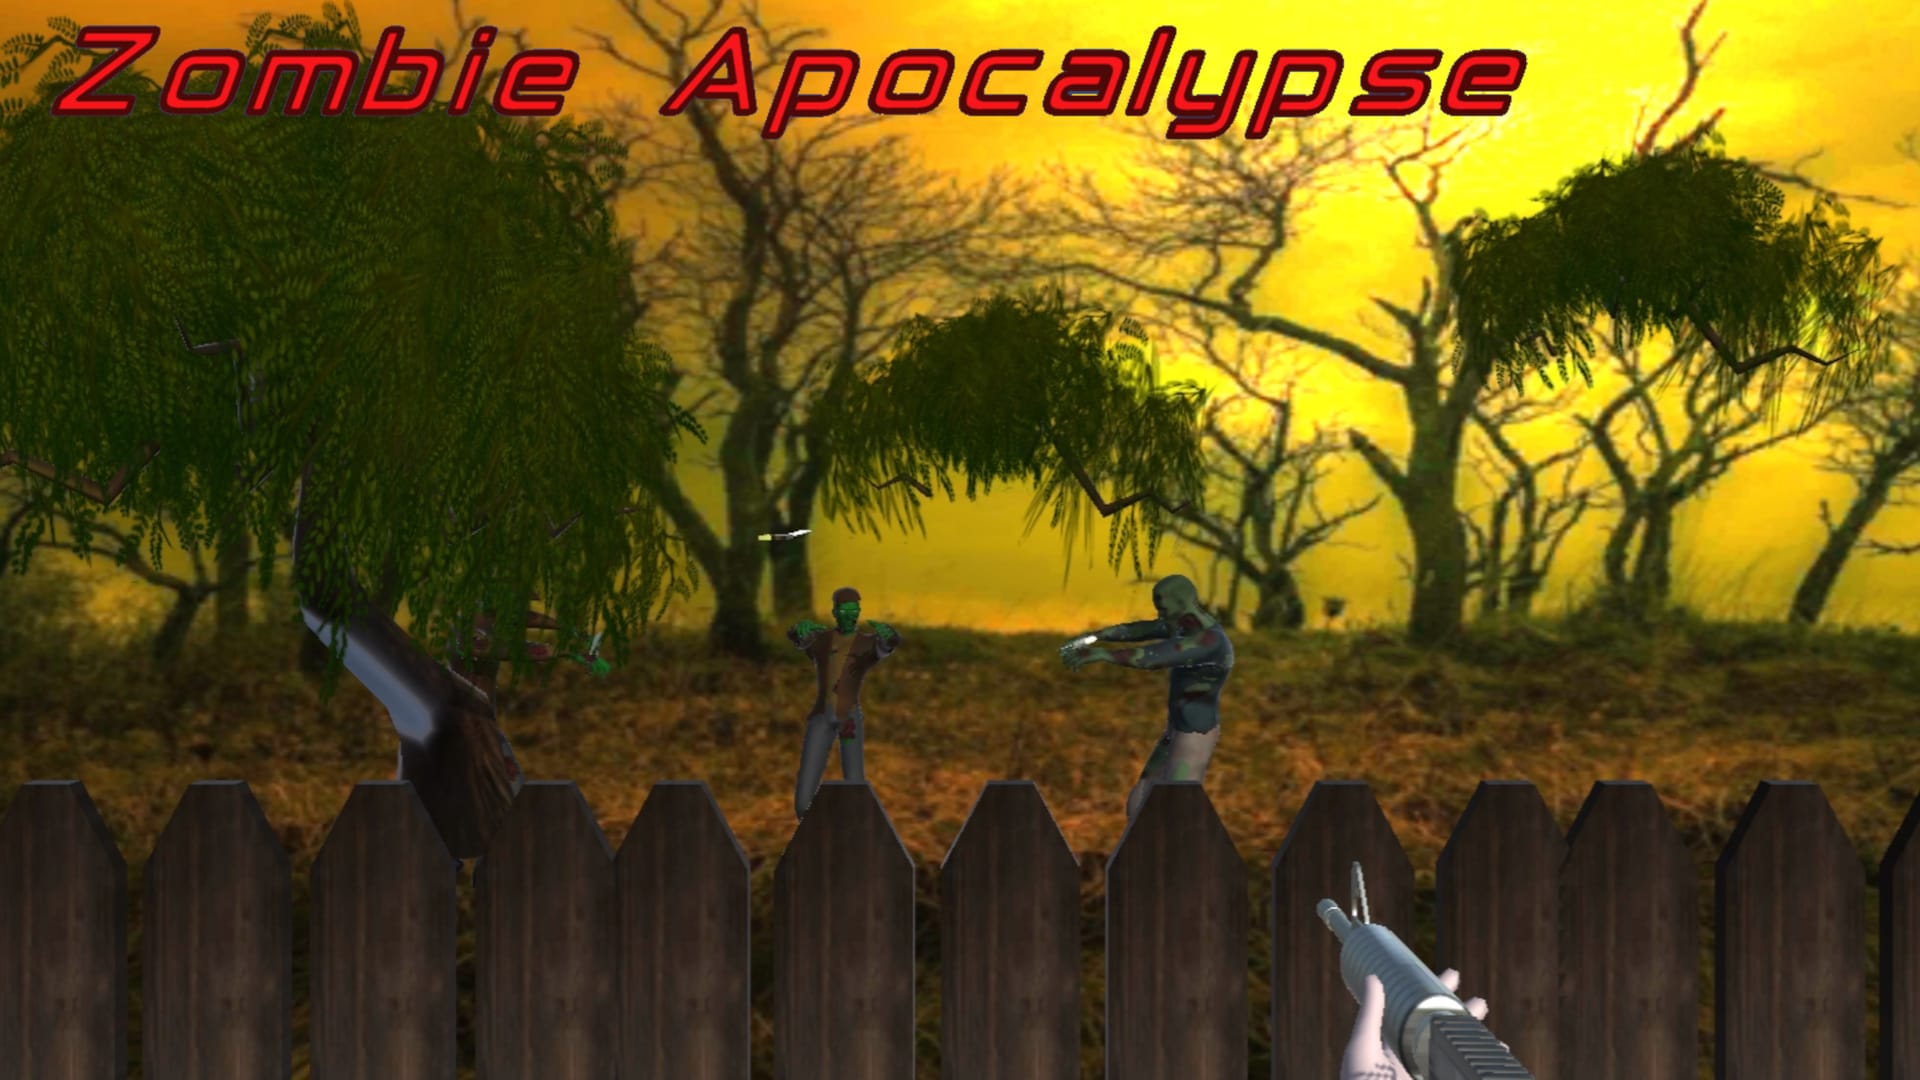 Zombie Apocalypse 1